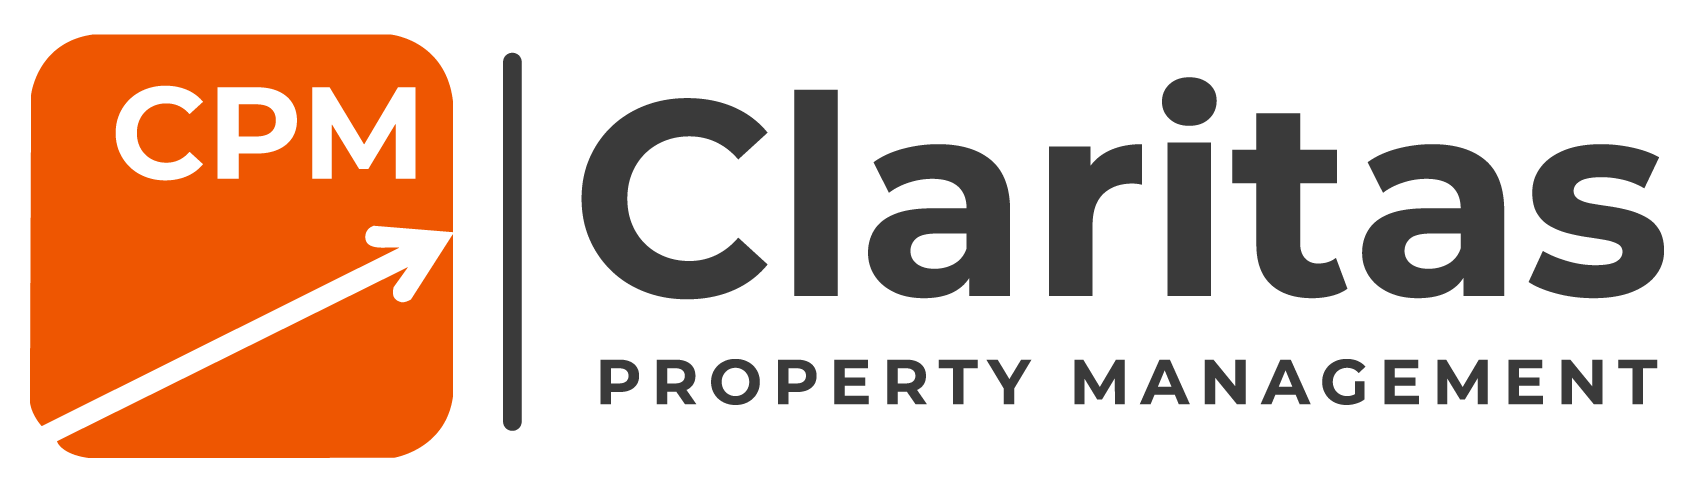 Claritas Property Management Logo - Select To Go Home